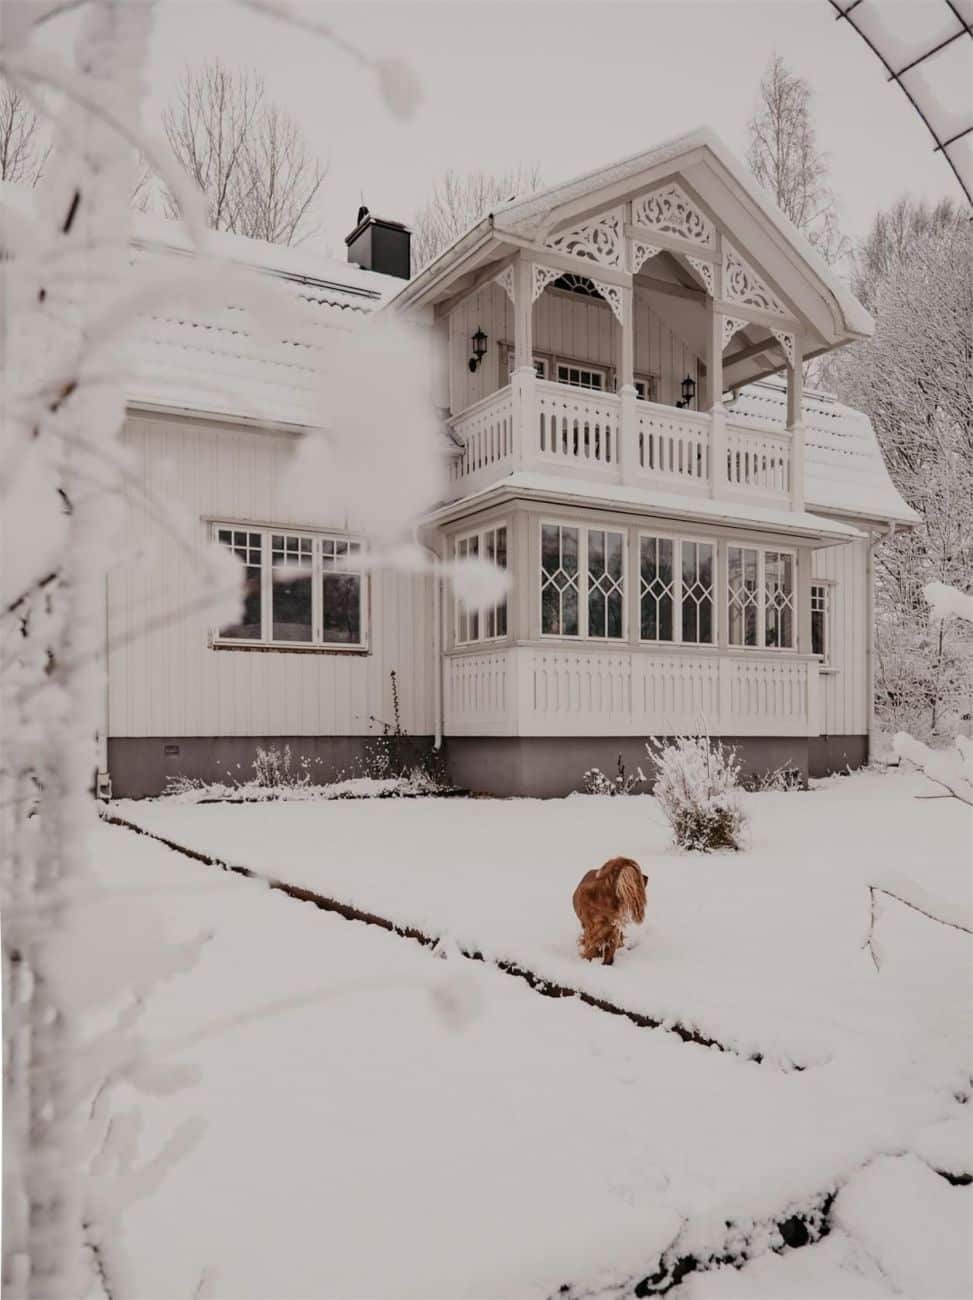 1946 Historic House For Sale In Herrljunga Sweden